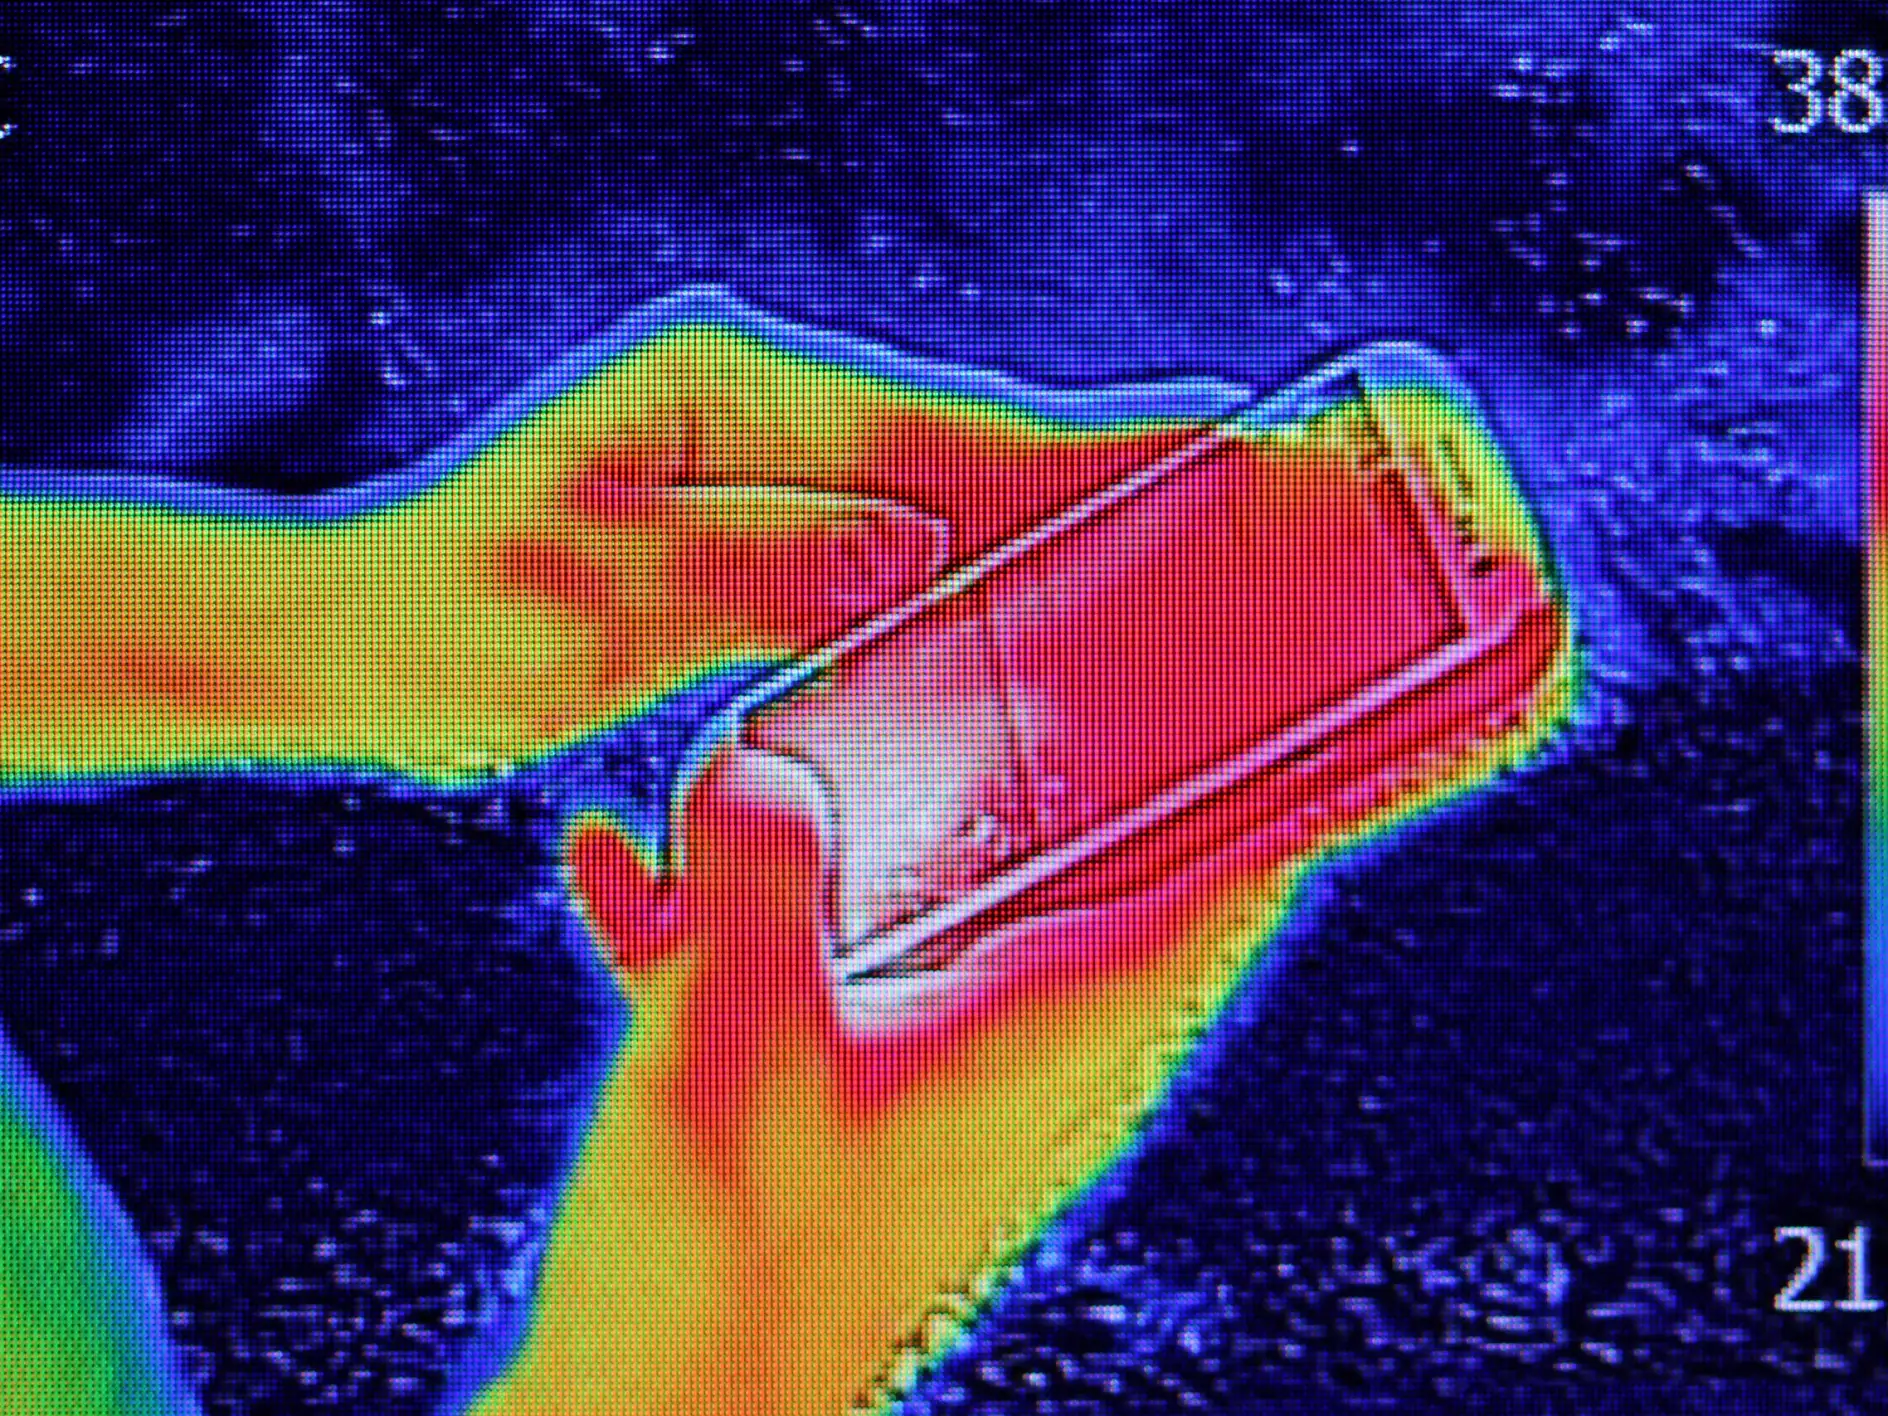 Infračervená termografia zobrazujúca vyžarovanie tepla, keď mladé dievča používa smartfón alebo mobilný telefón